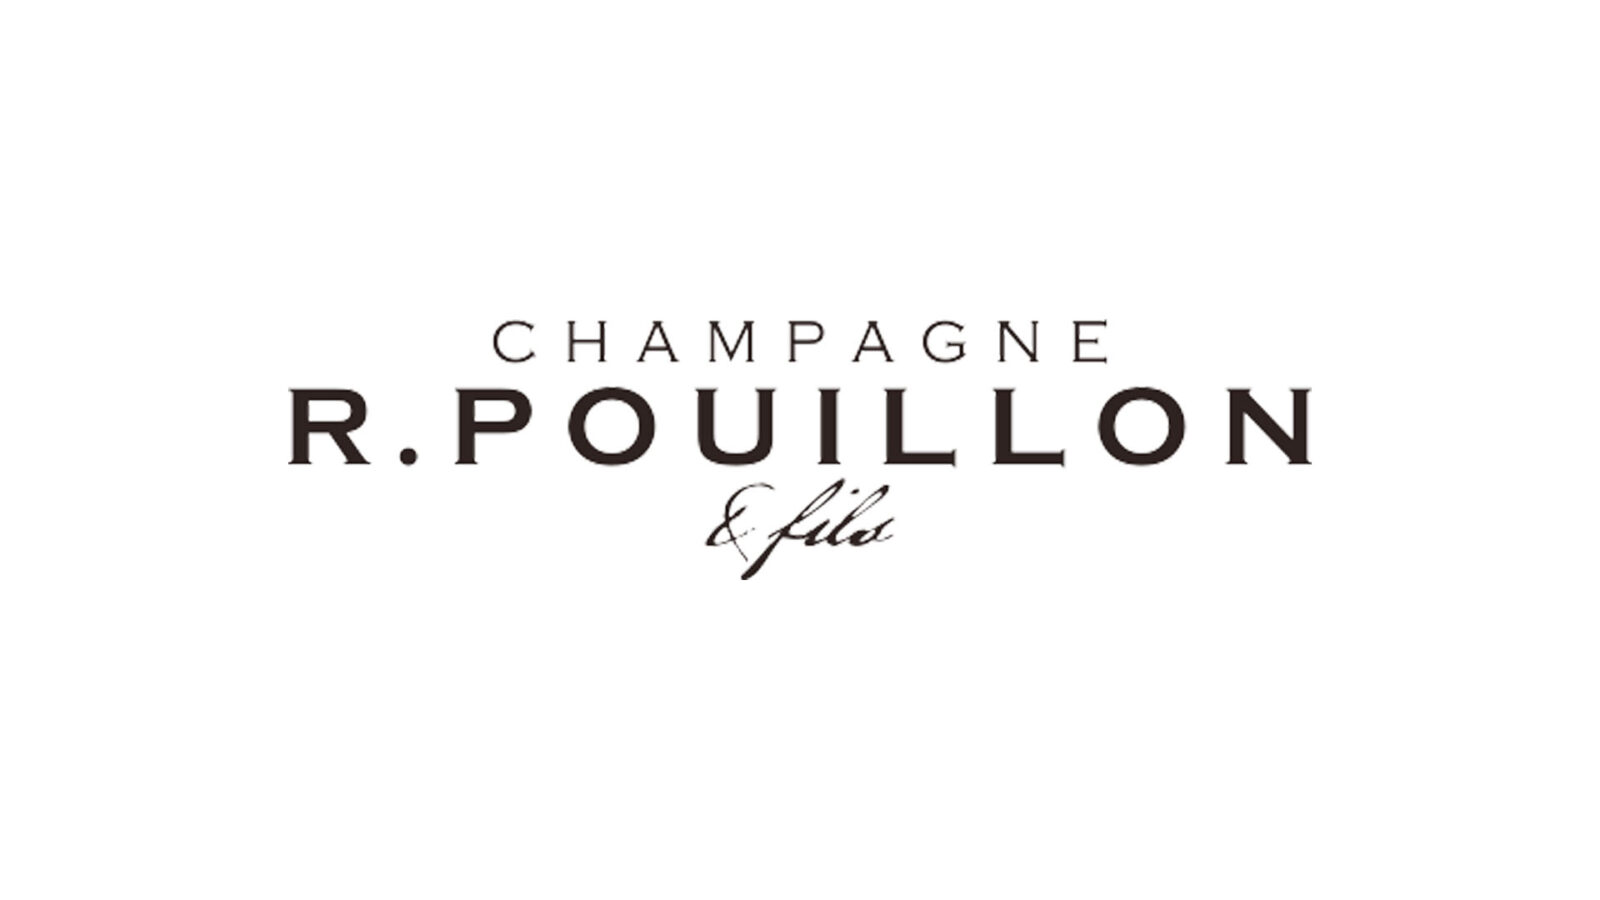 Champagne R. Pouillon & Fils